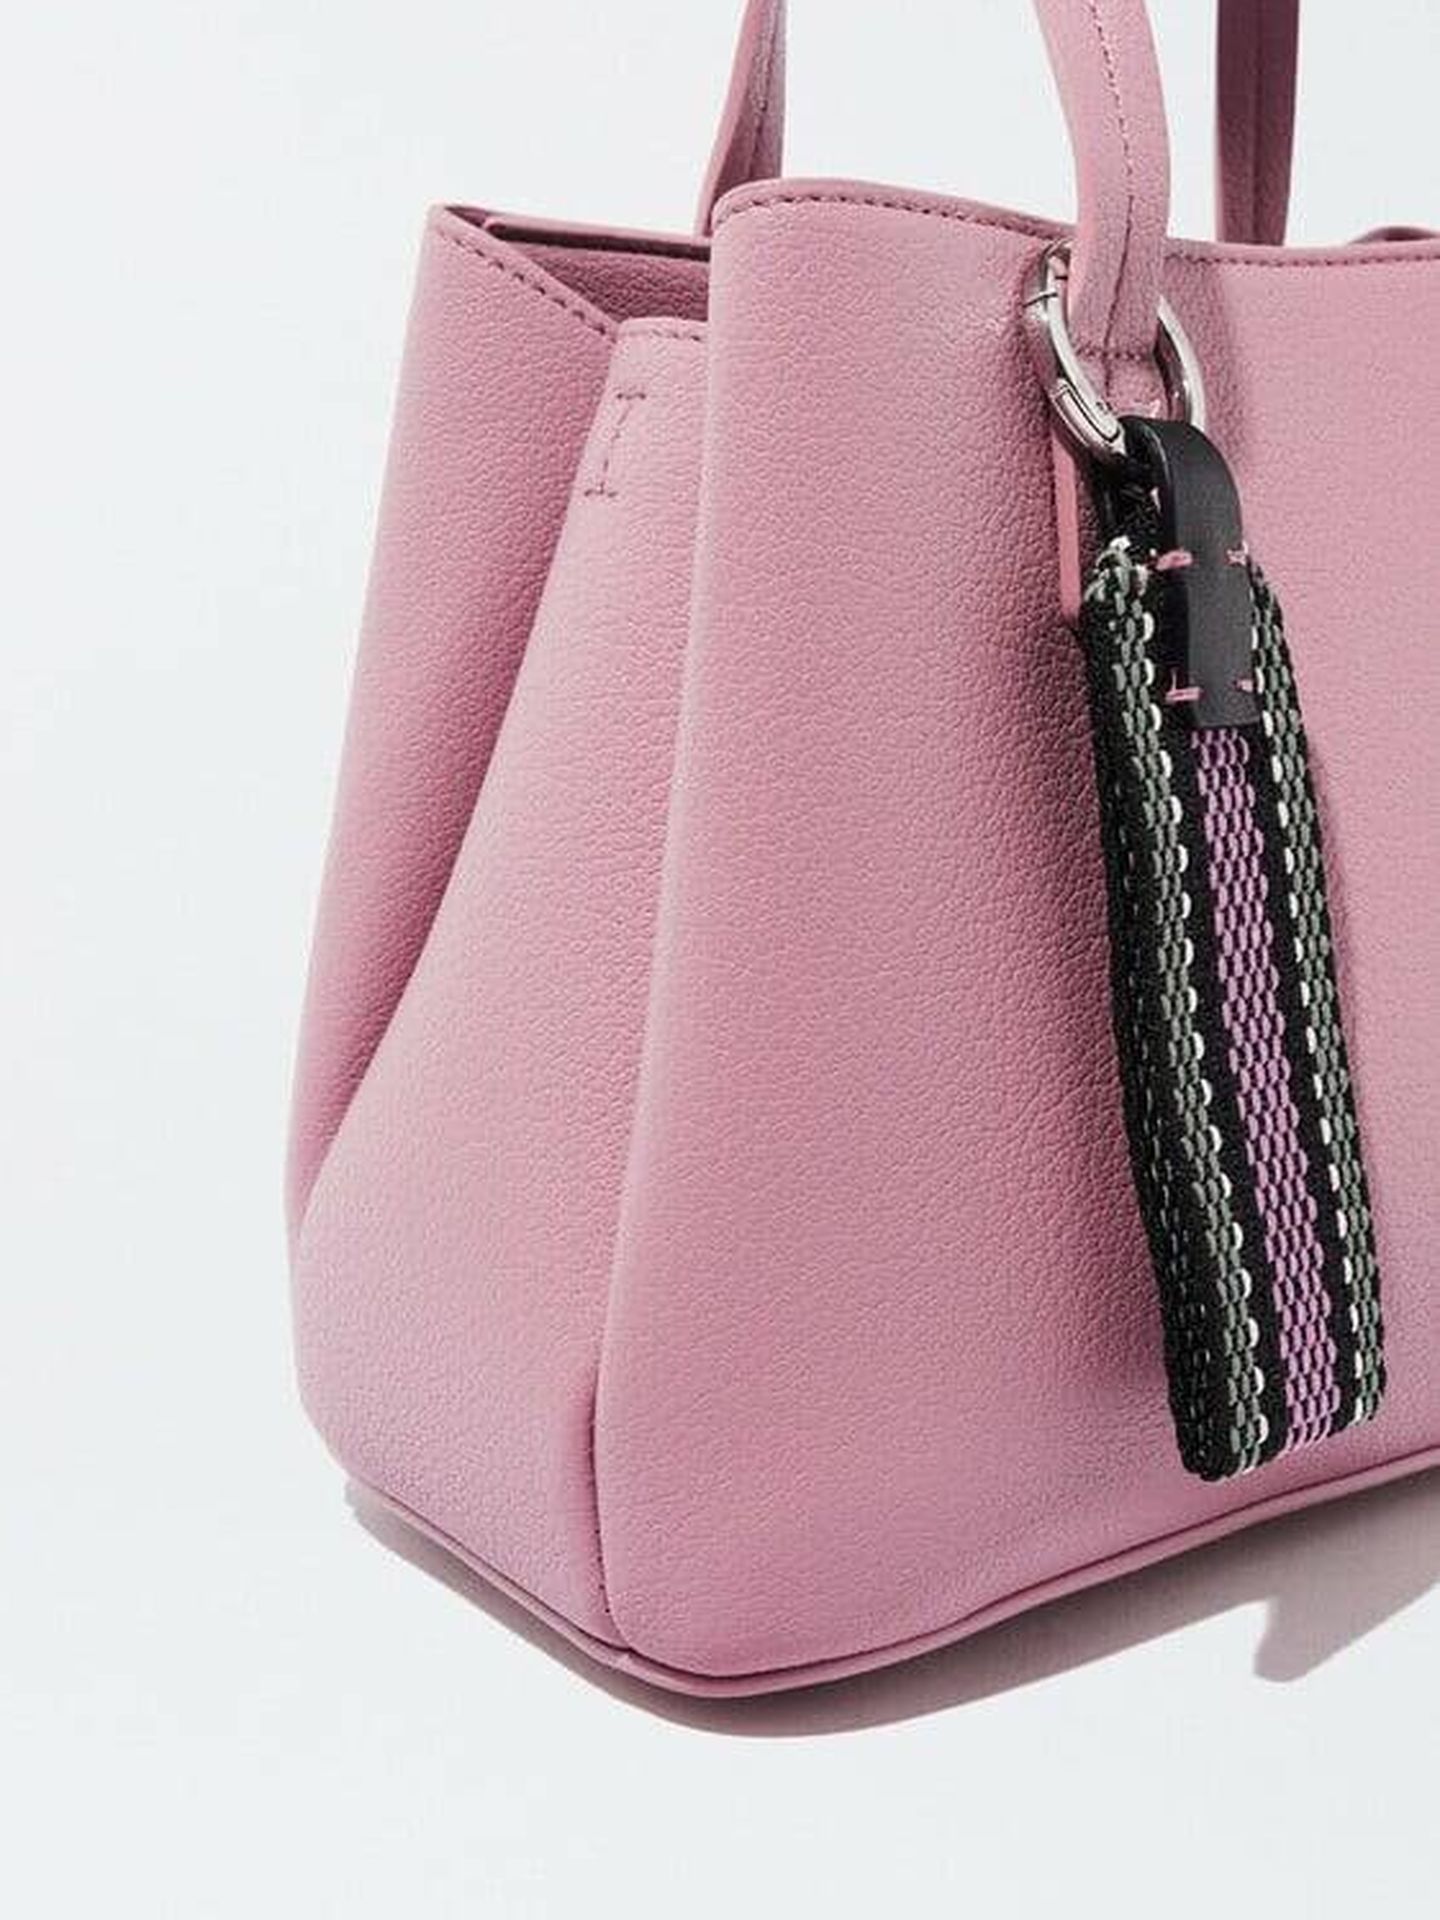 Detalle de la versión rosa de este bolso de Parfois. (Parfois)